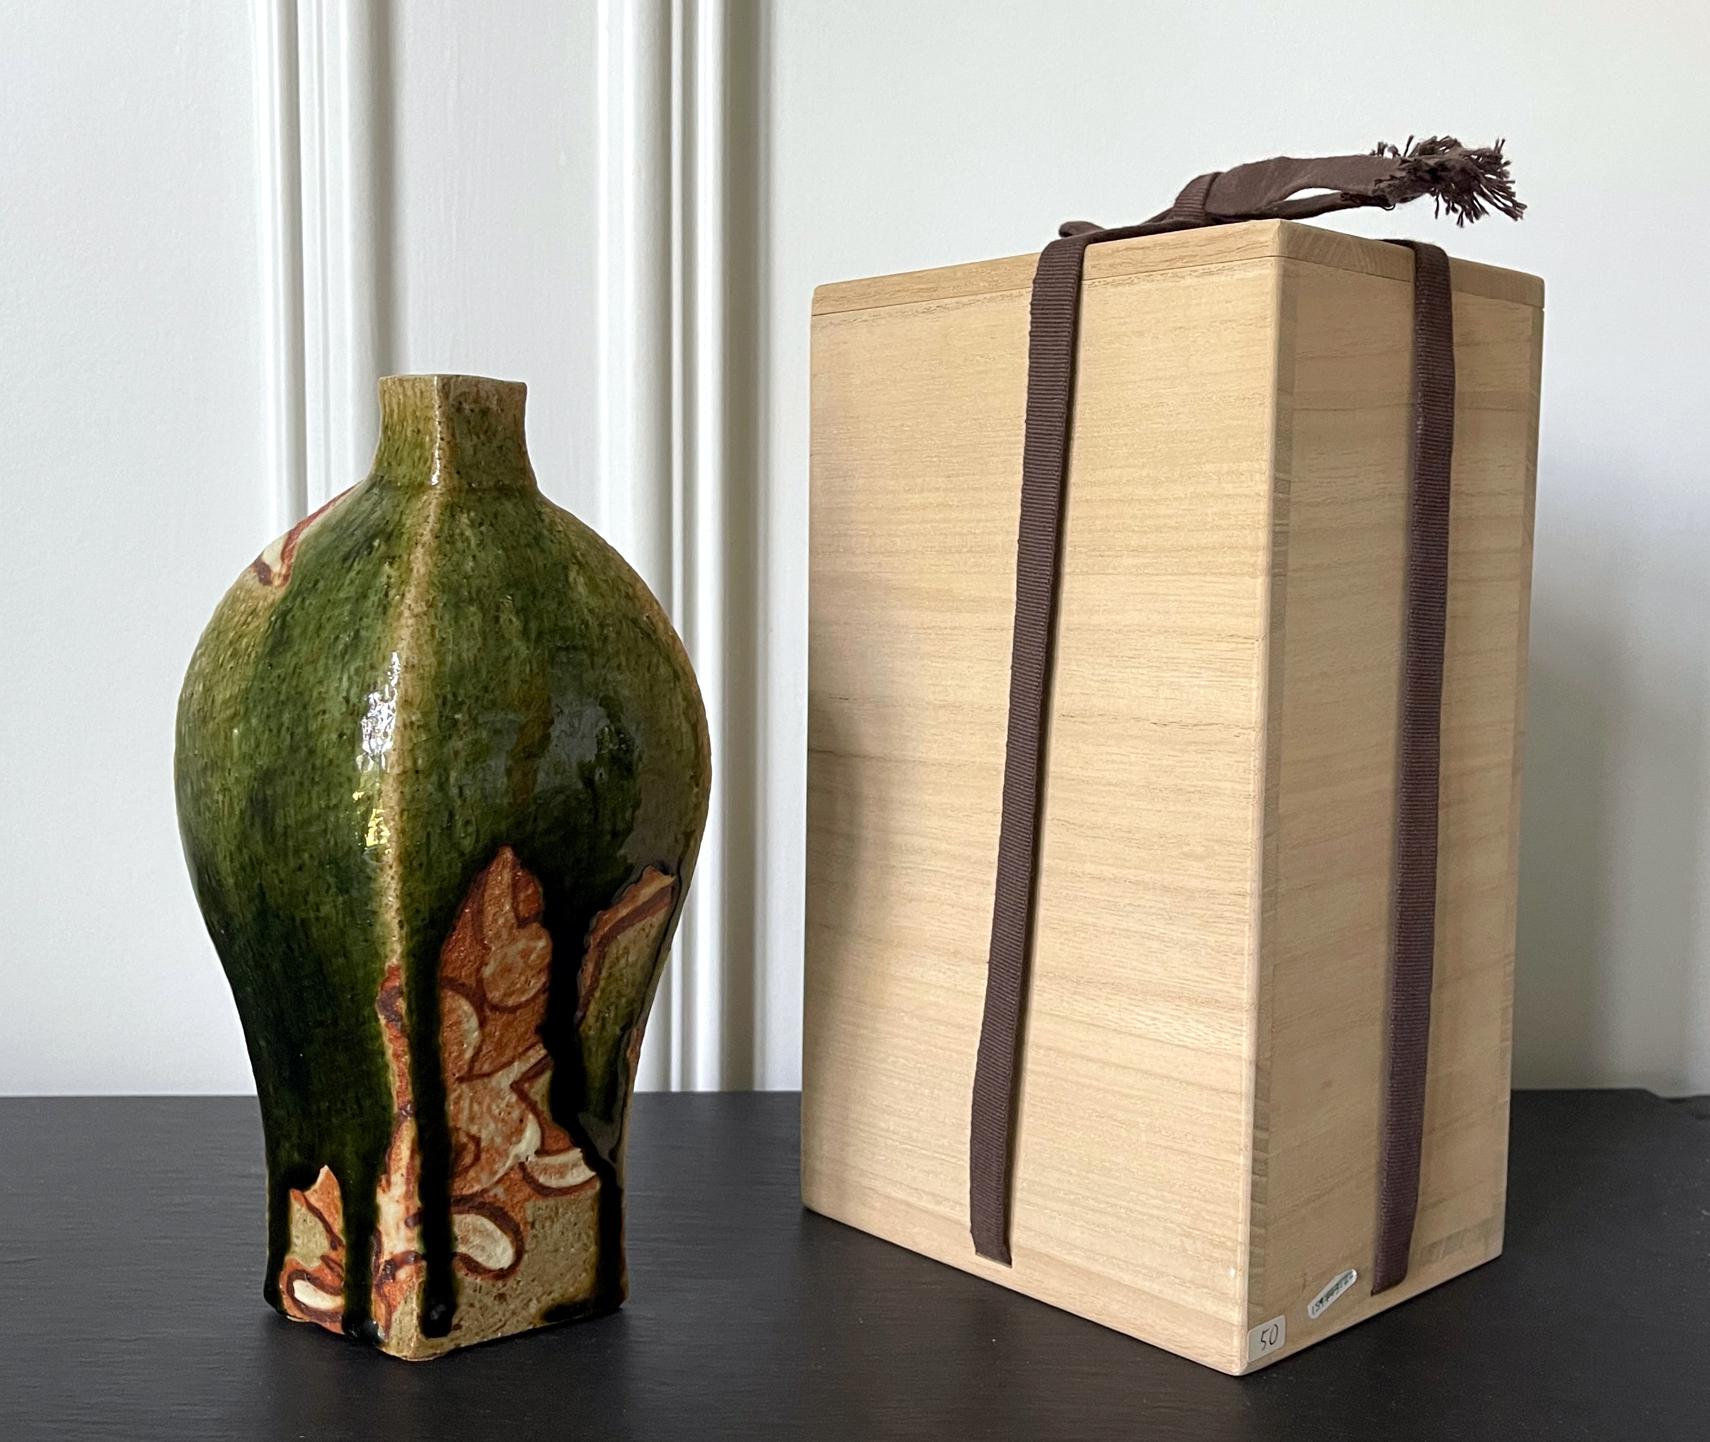 Eine zeitgenössische Vase aus Studiokeramik des japanischen Töpfers Ken Matsuzaki (1950-). Die Vase weist eine geometrische Spindelform auf, die sich durch ihre Modernität auszeichnet. Sie ist mit einer dicken, tropfenden grünen Oribe-Glasur